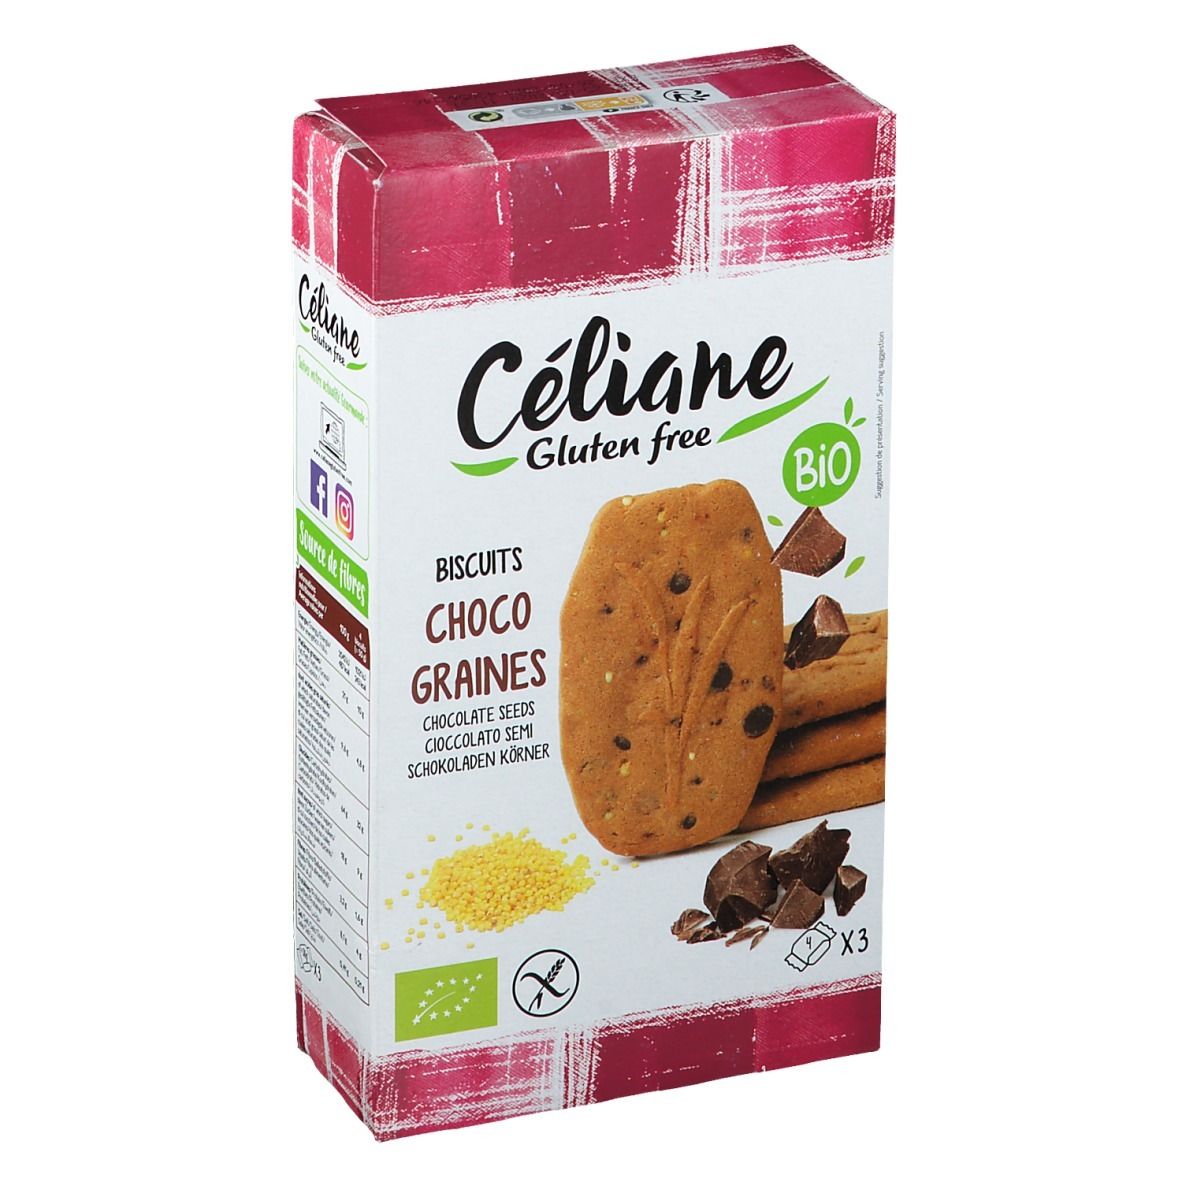 Céliane Gluten free Biscuits Choco graines